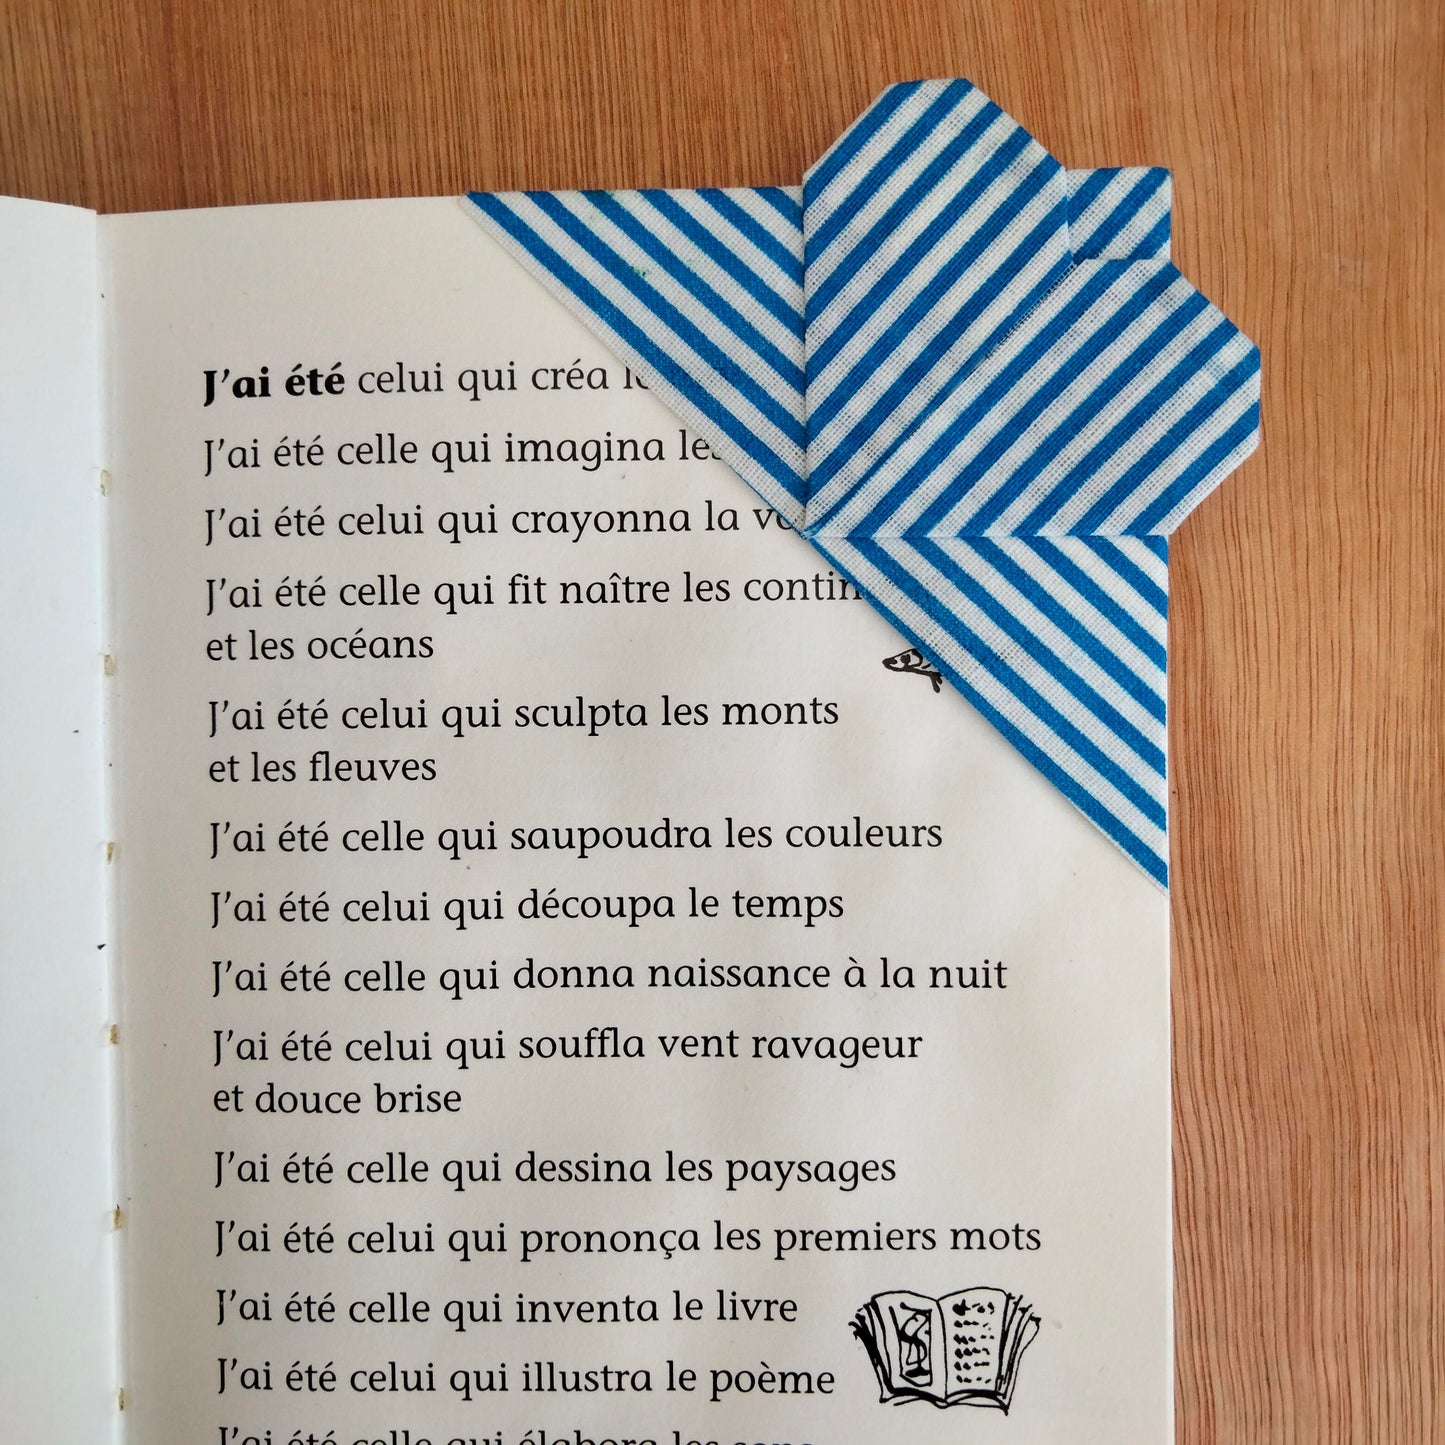 Coin de page avec un coeur en origami, pour les amoureux de lecture